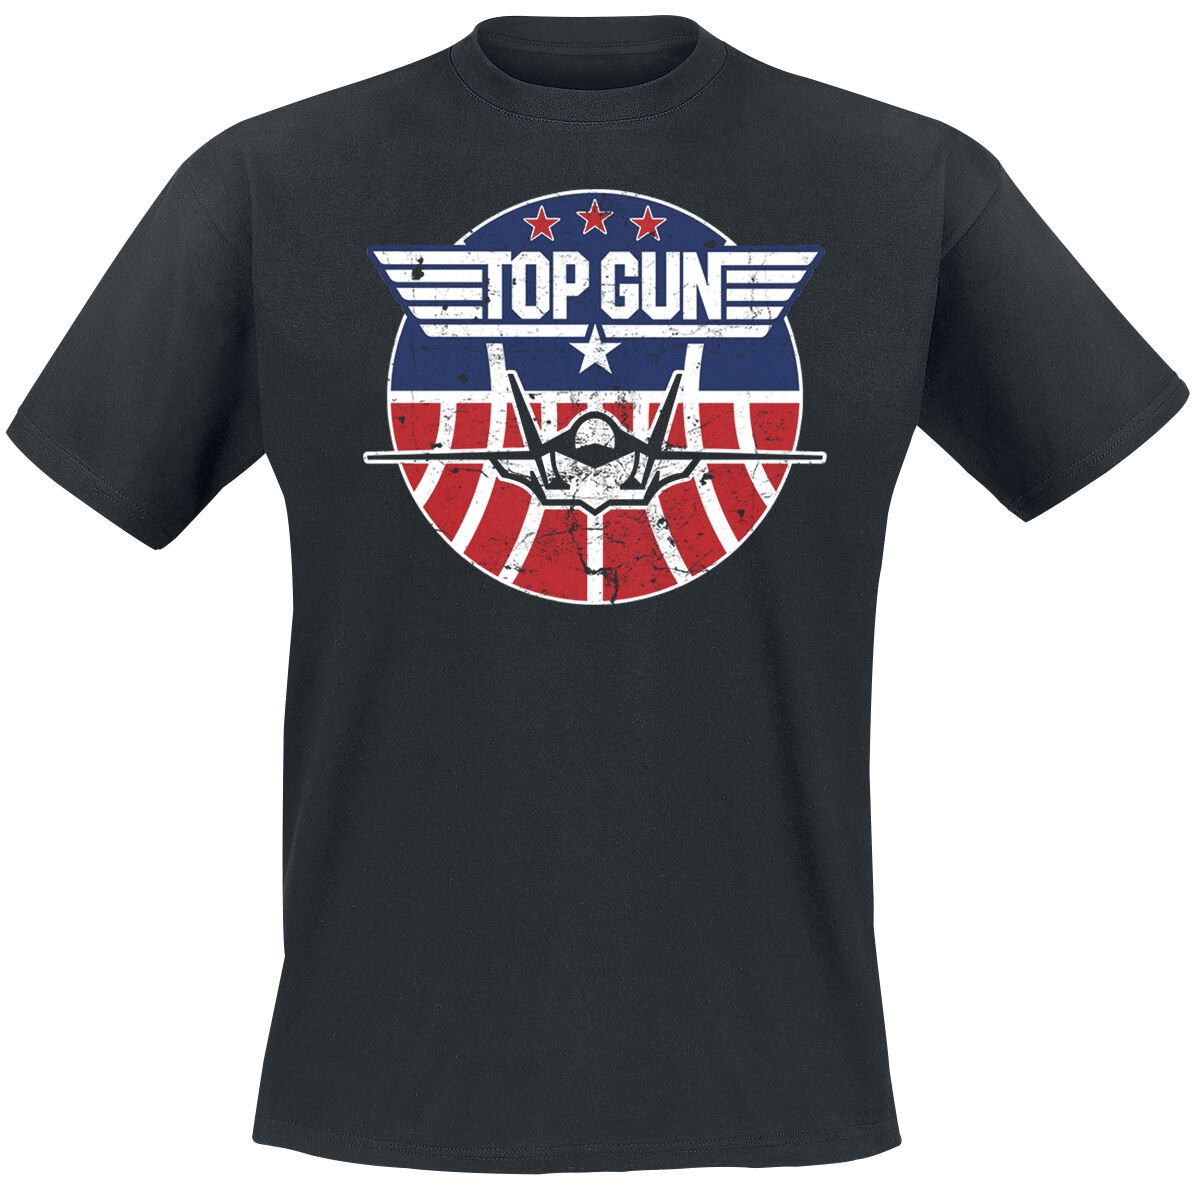 Top Gun Maverick - Tomcat T-Shirt black